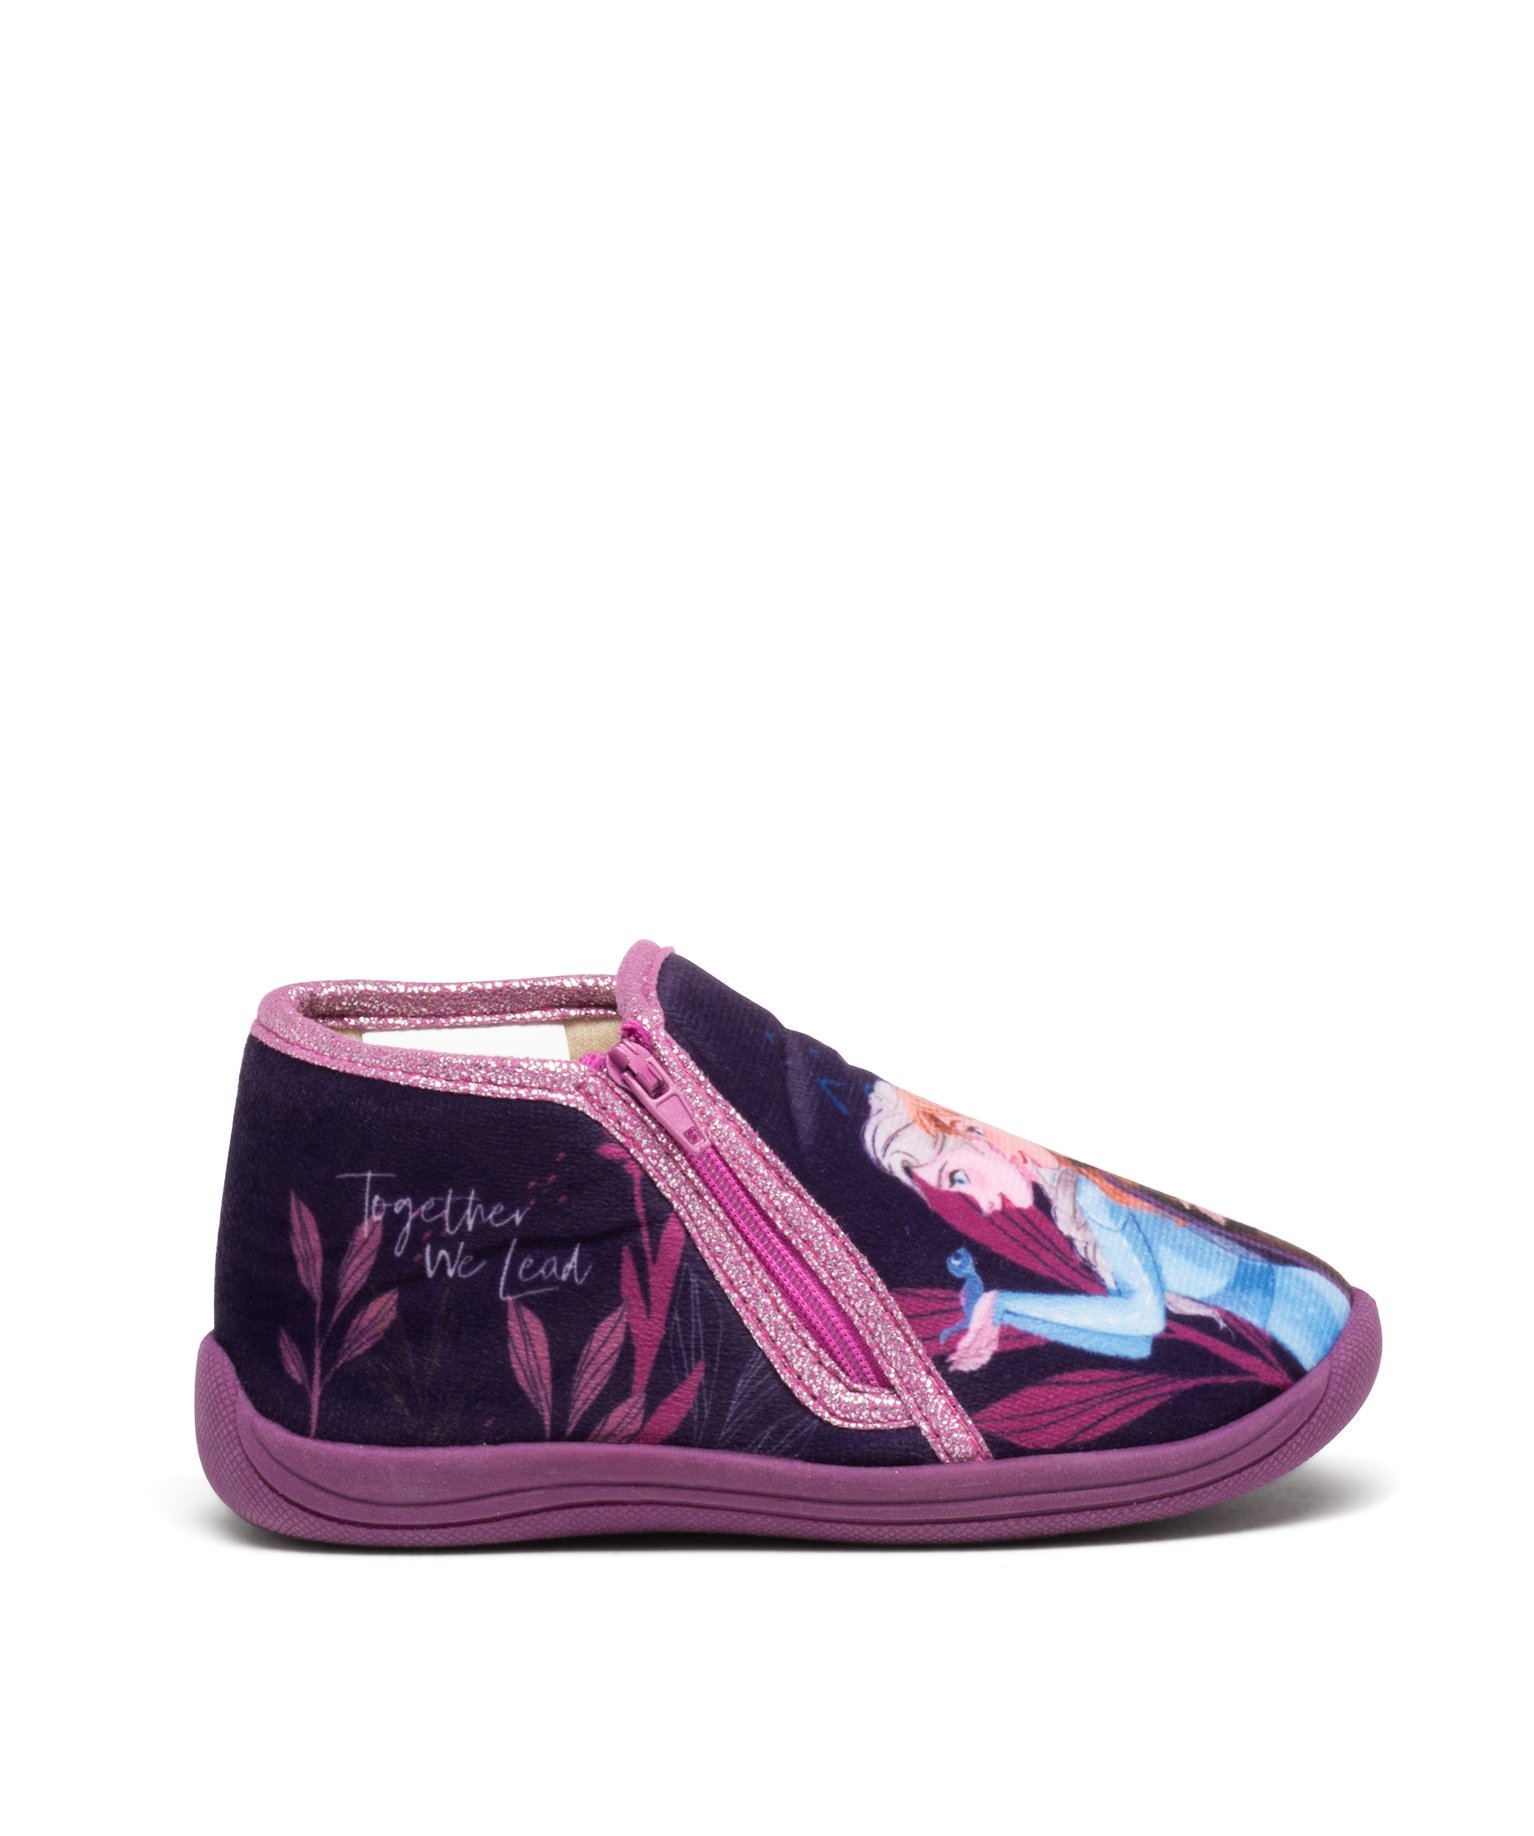 Chaussons fille bottillons à zip La Reine des Neiges - Disney - 29 - violet - REINE DES NEIGE